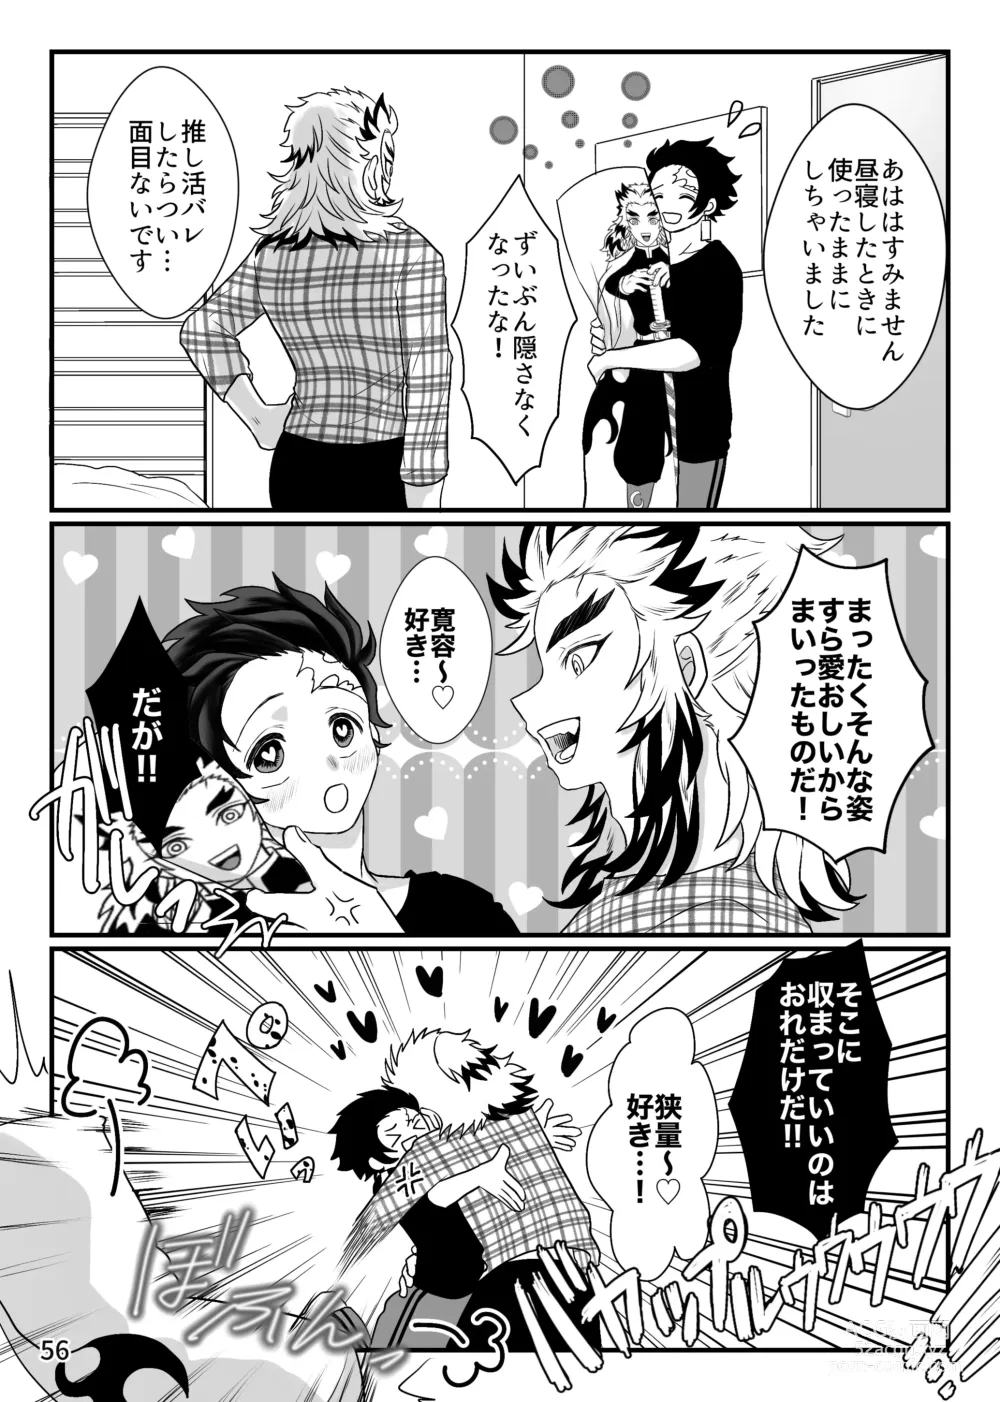 Page 56 of doujinshi Tsuyobi ga Sugiru zo, Shounen!